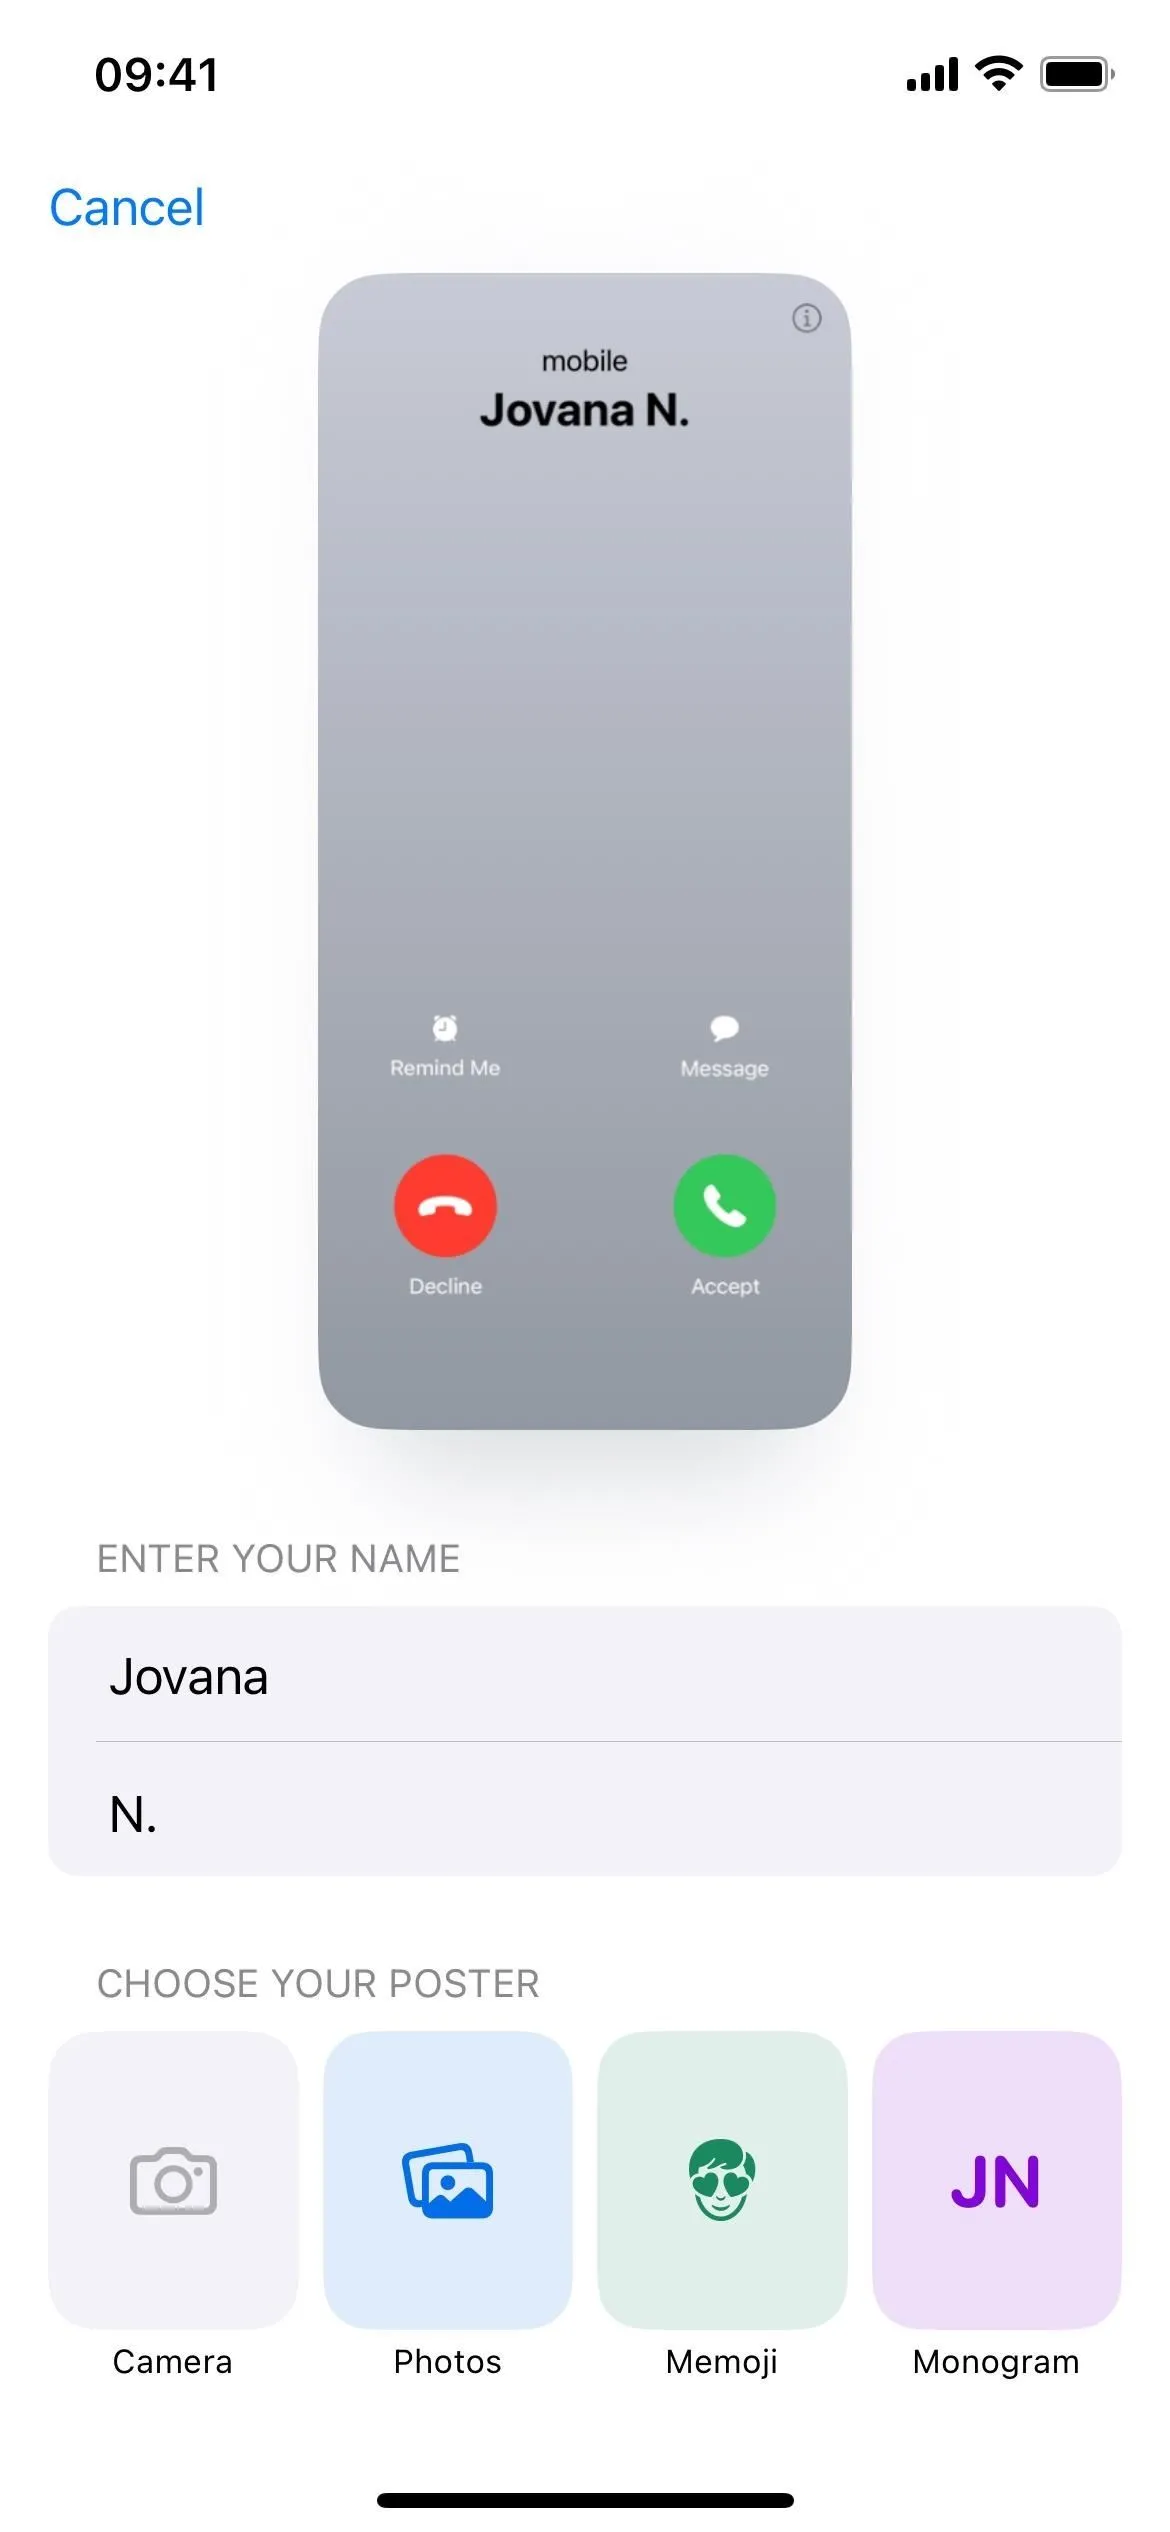 Définissez une affiche de contact personnalisée sur votre iPhone que les autres verront lorsque vous les appellerez